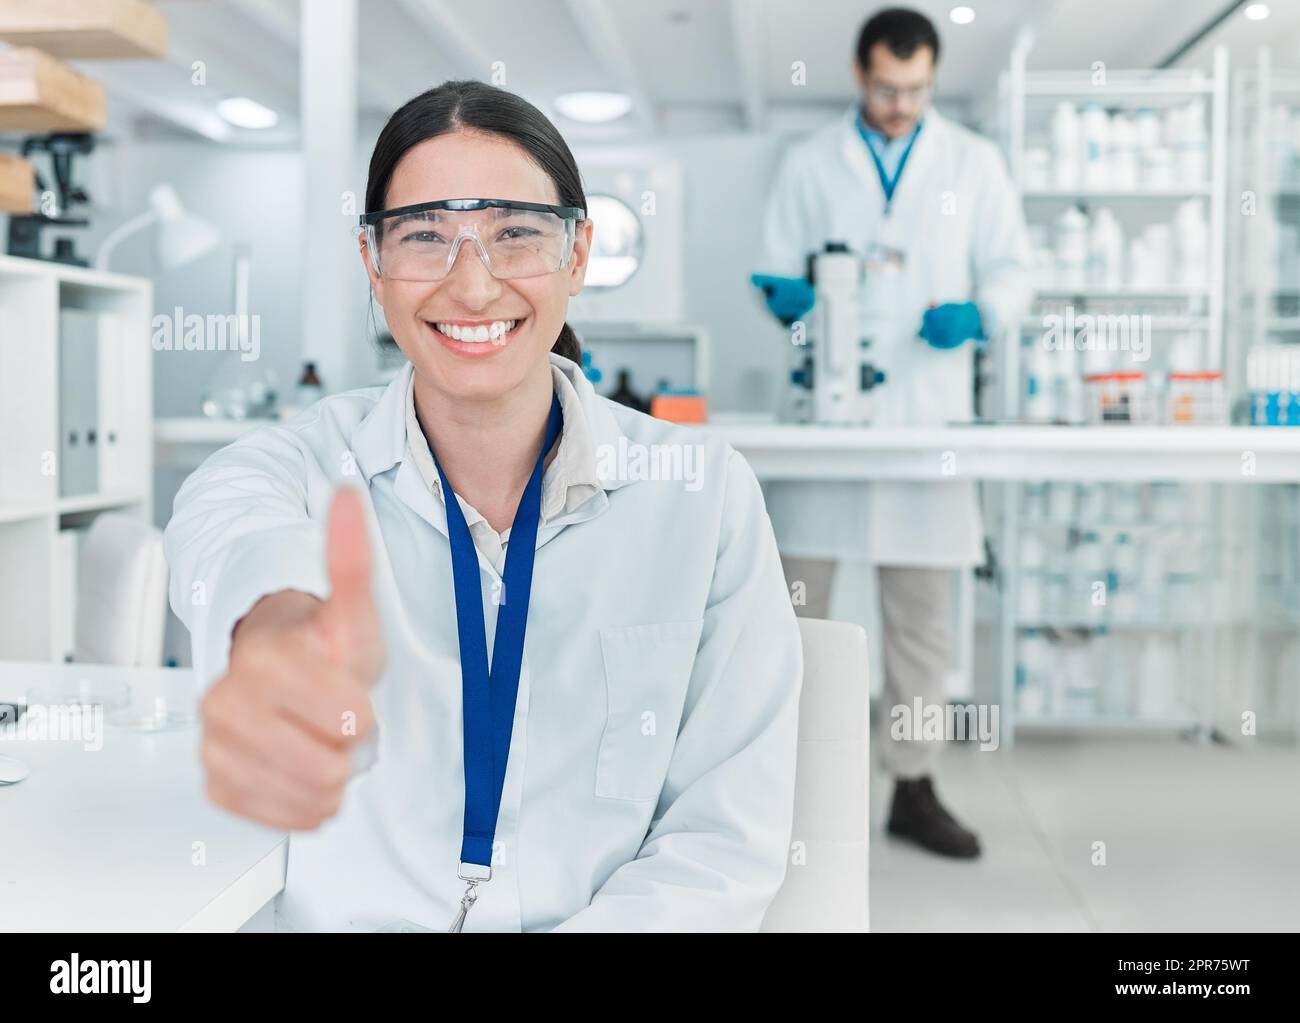 Mon expérience a été un succès ardu. Portrait d'un jeune scientifique montrant les pouces dans un laboratoire. Banque D'Images